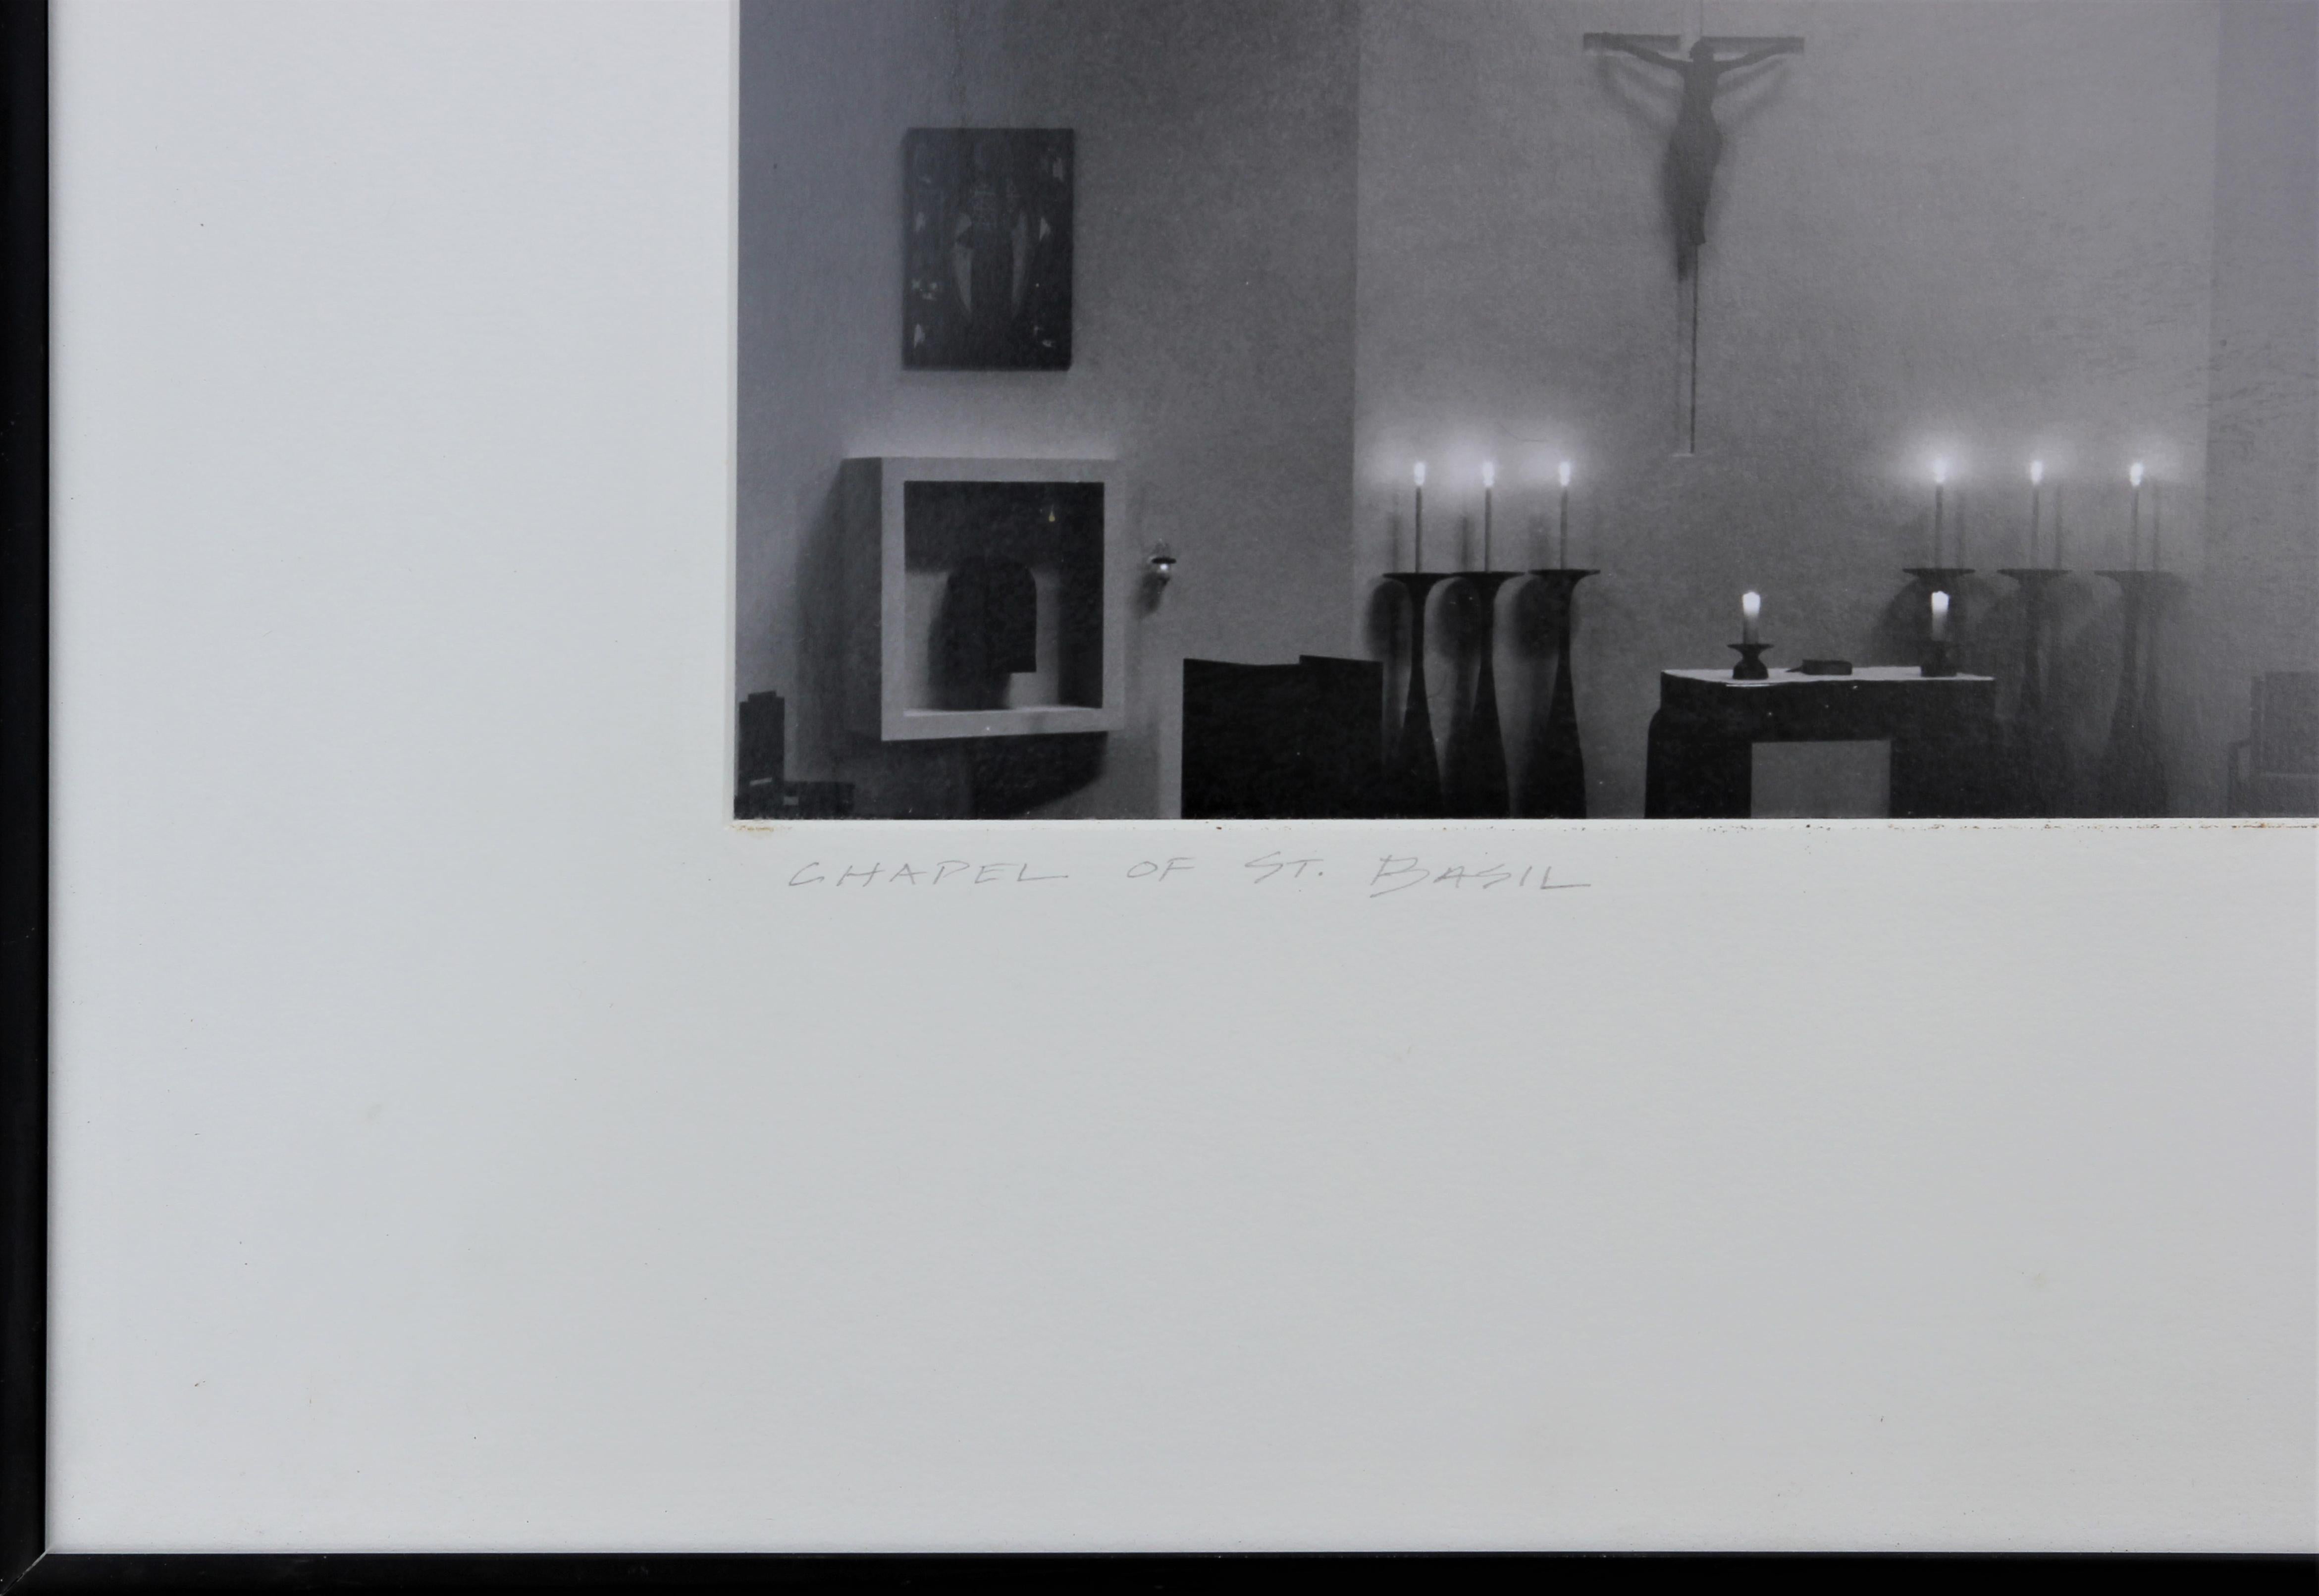 Schwarz-Weiß-Fotografie des Kirchenfensters und des Kruzifixes „Chapel of St. Basil“ (Grau), Black and White Photograph, von Nash Baker